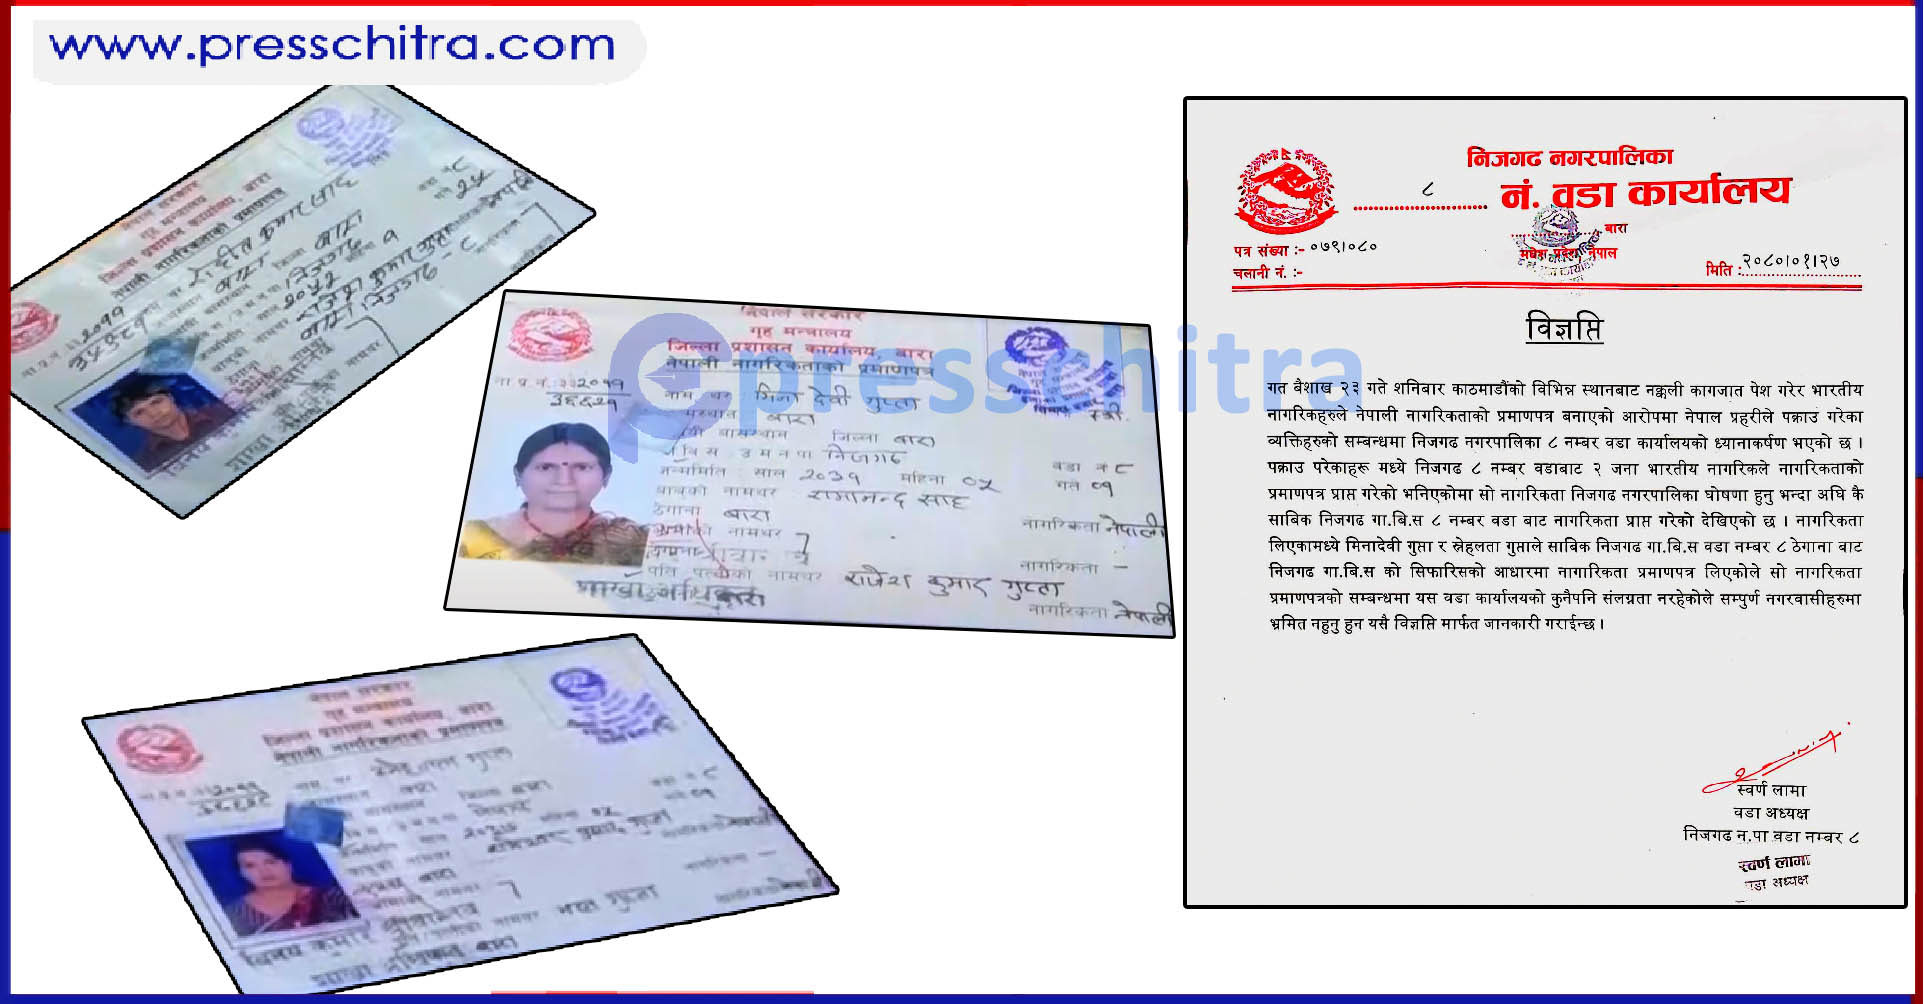  ३ जना भारतीय नागरिकले निजगढबाट नेपाली नागरिकताको प्रमाणपत्र लिएको घटनामा कार्वाहीको माग 